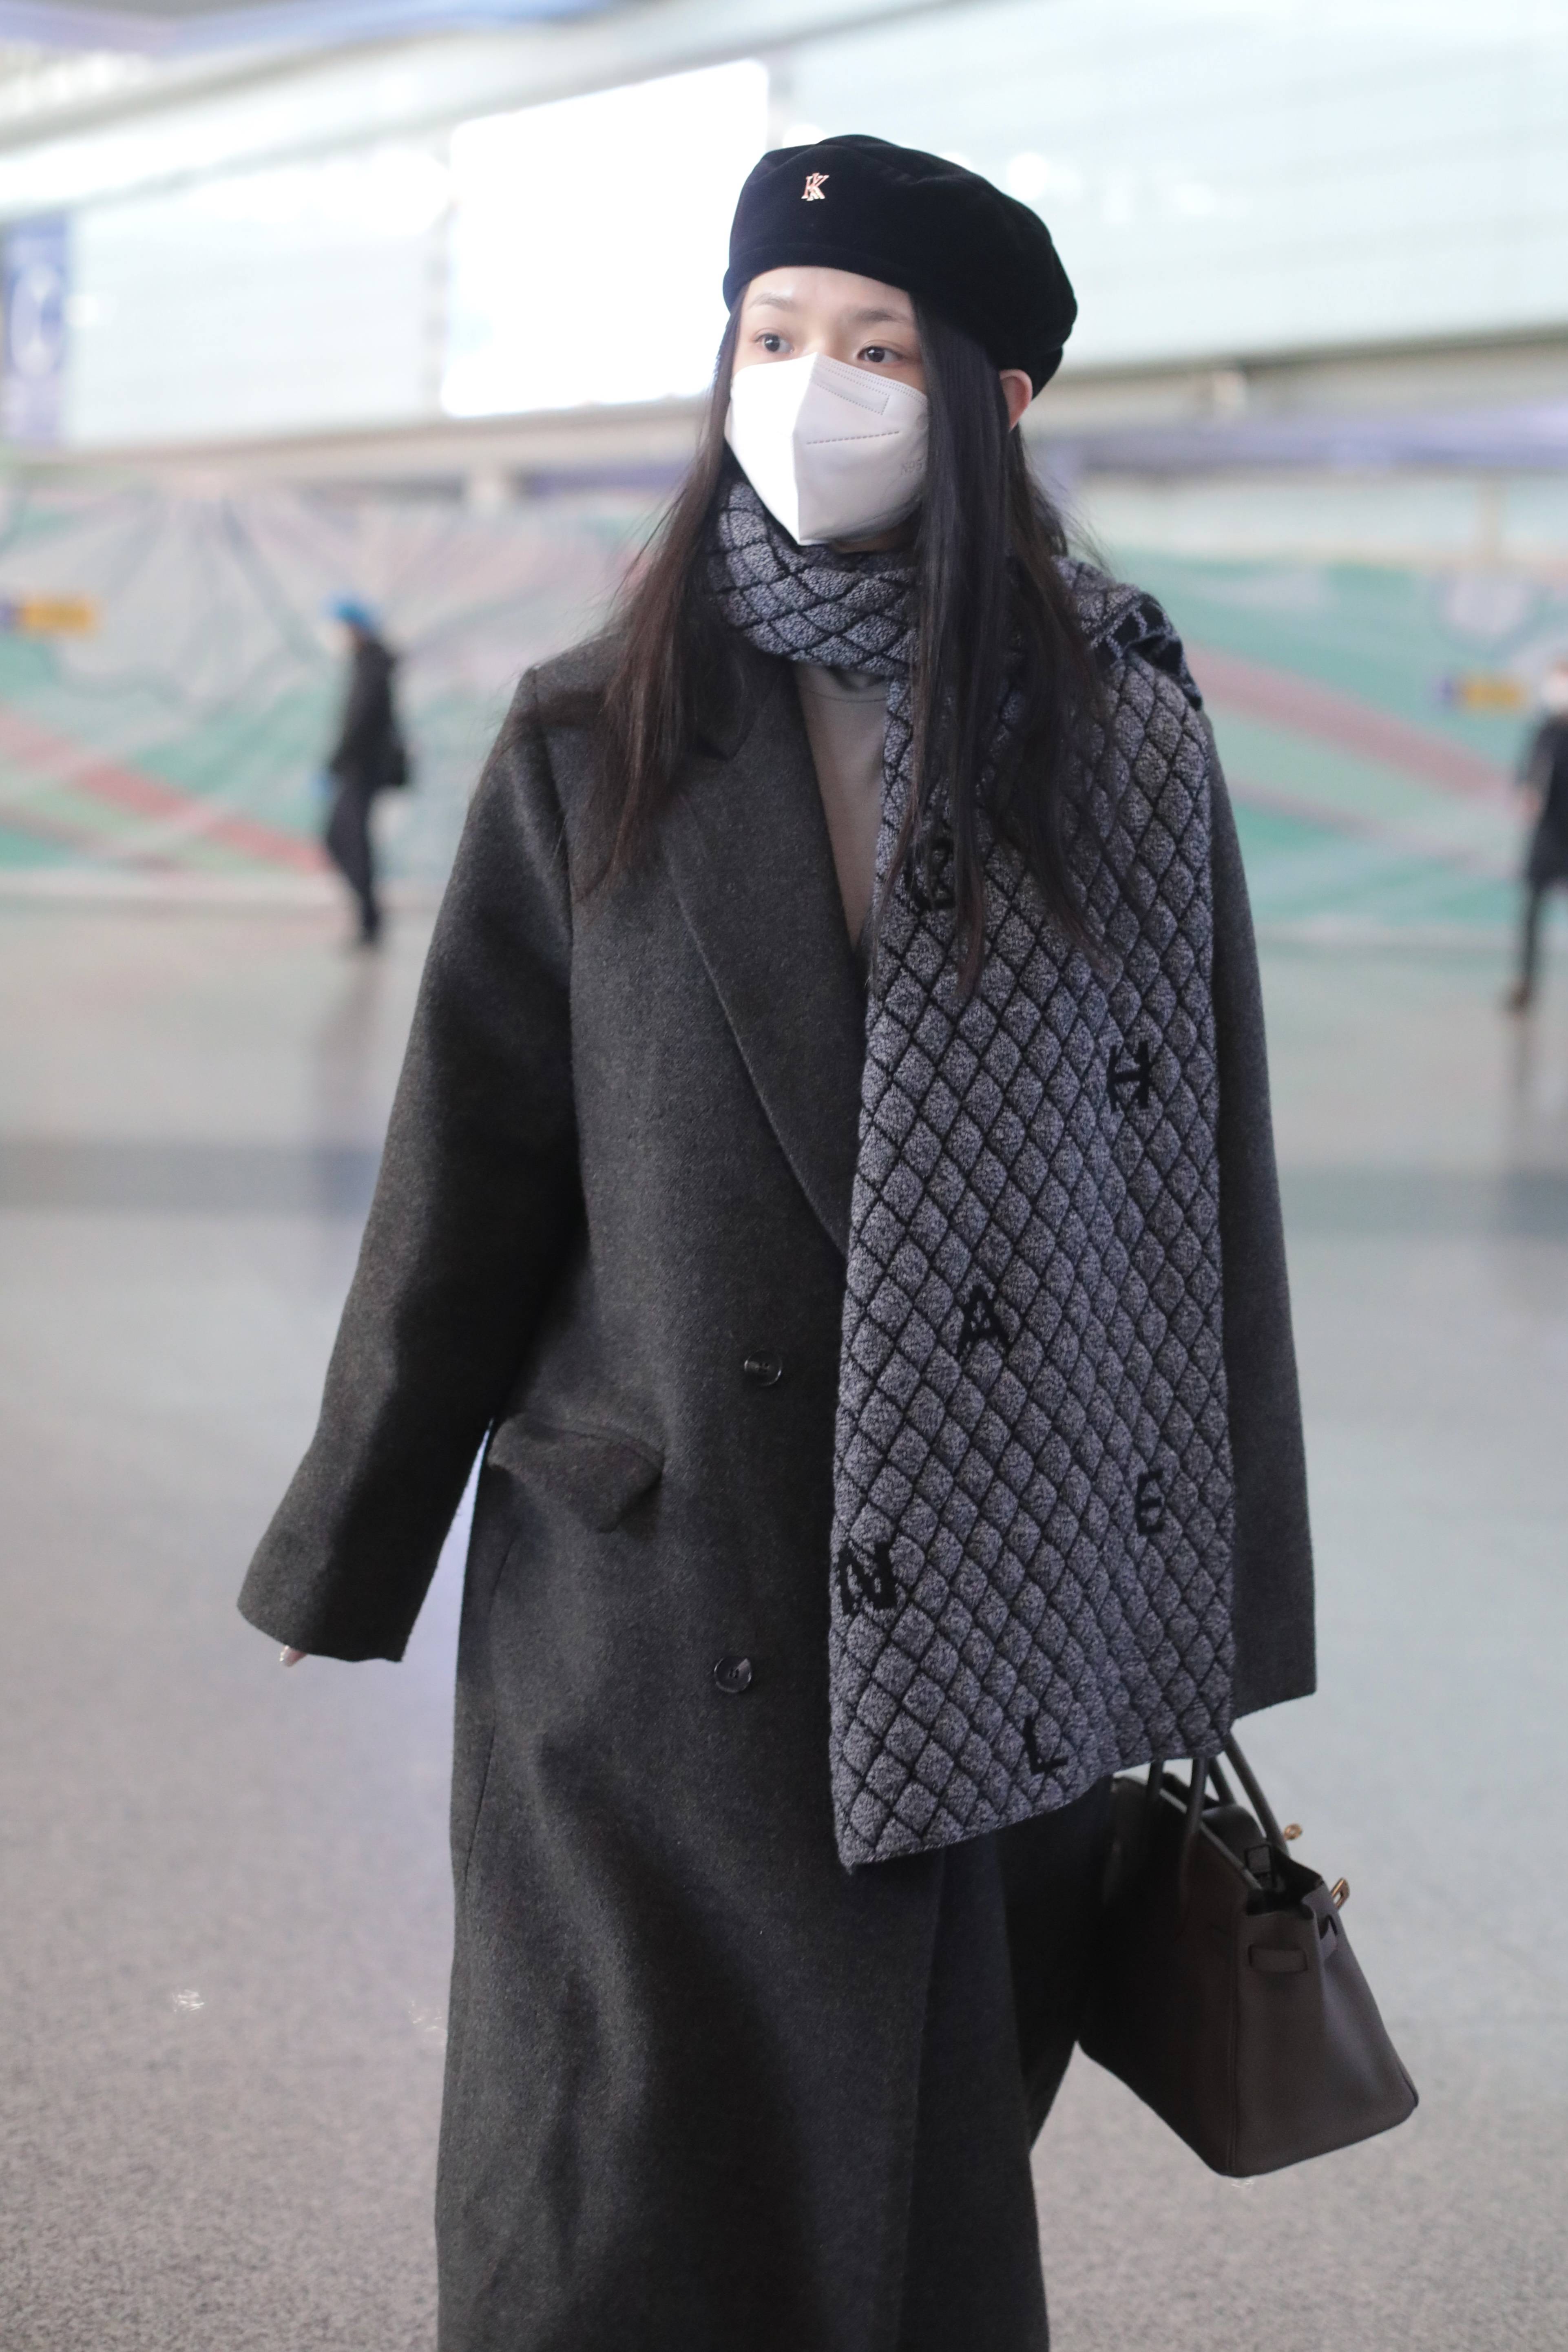 林允穿毛呢大衣现身机场 大围巾搭在肩上显优雅-搜狐大视野-搜狐新闻